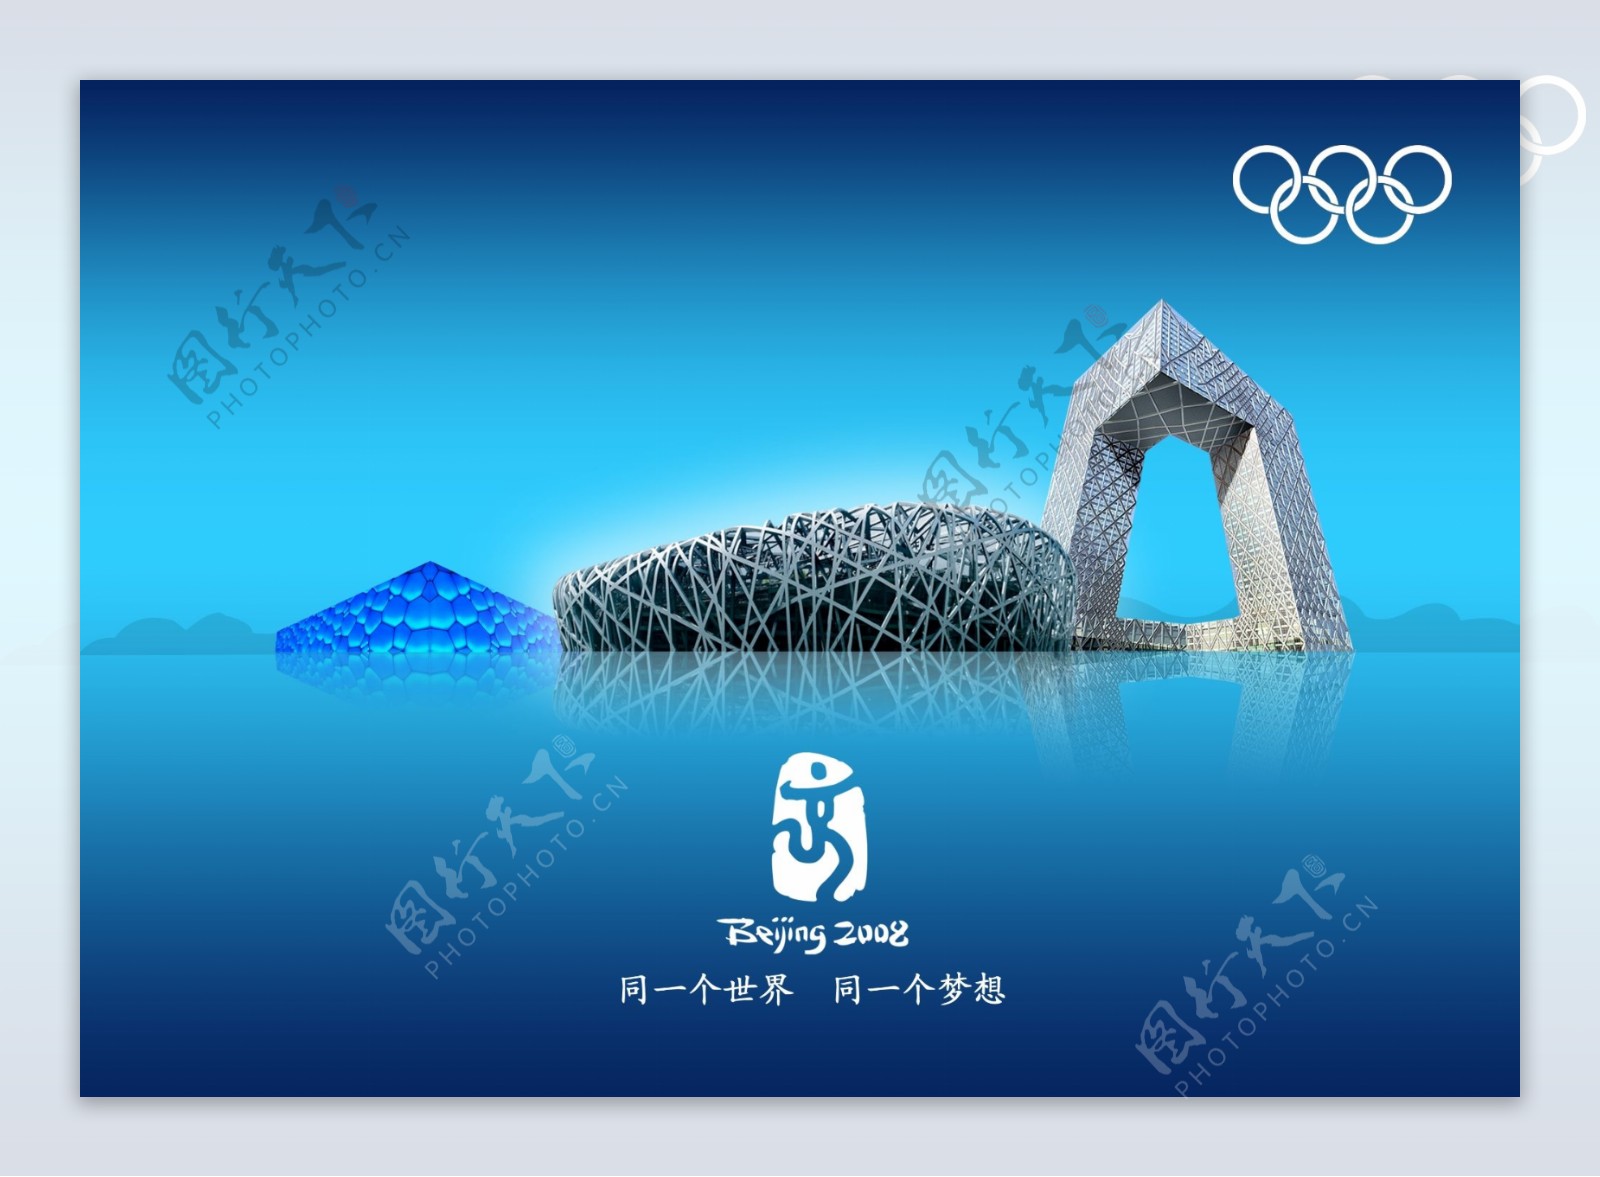 北京2008奥运会图片